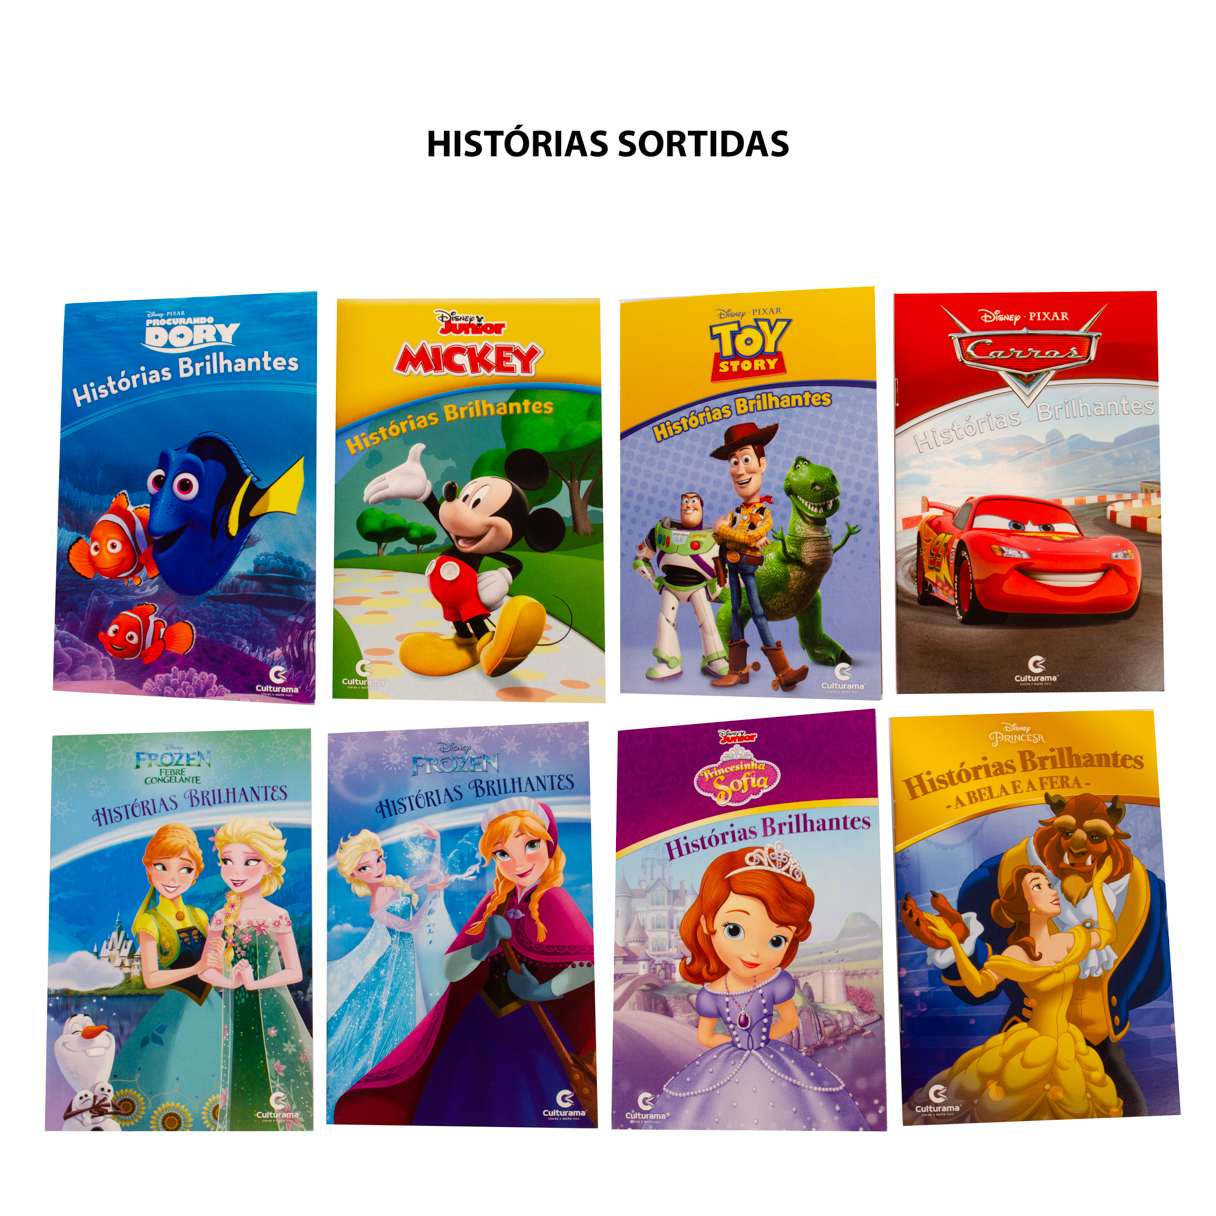 Livro 365 Desenhos Para Colorir Disney Pixar Culturama